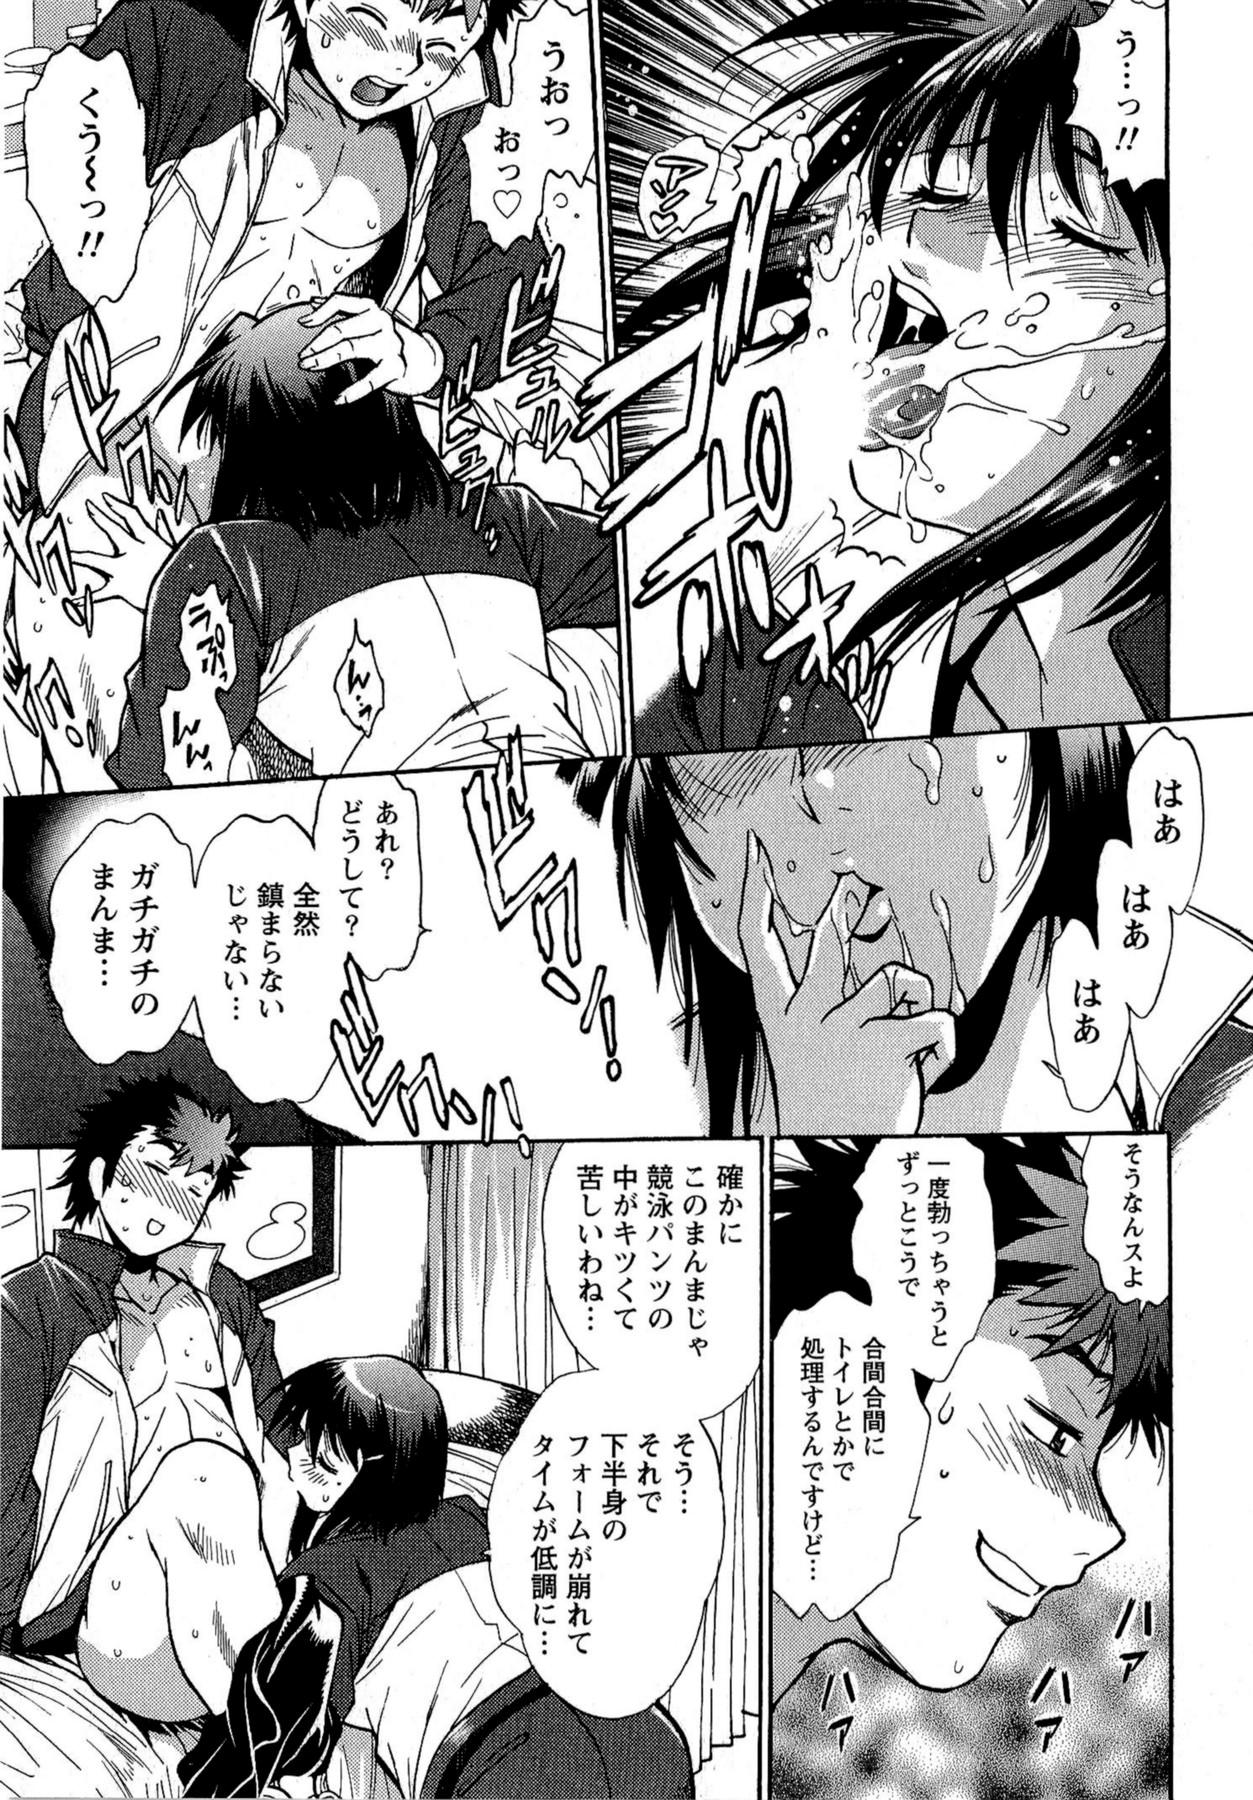 Kuikomi wo Naoshiteru Hima wa Nai! Vol. 2 14